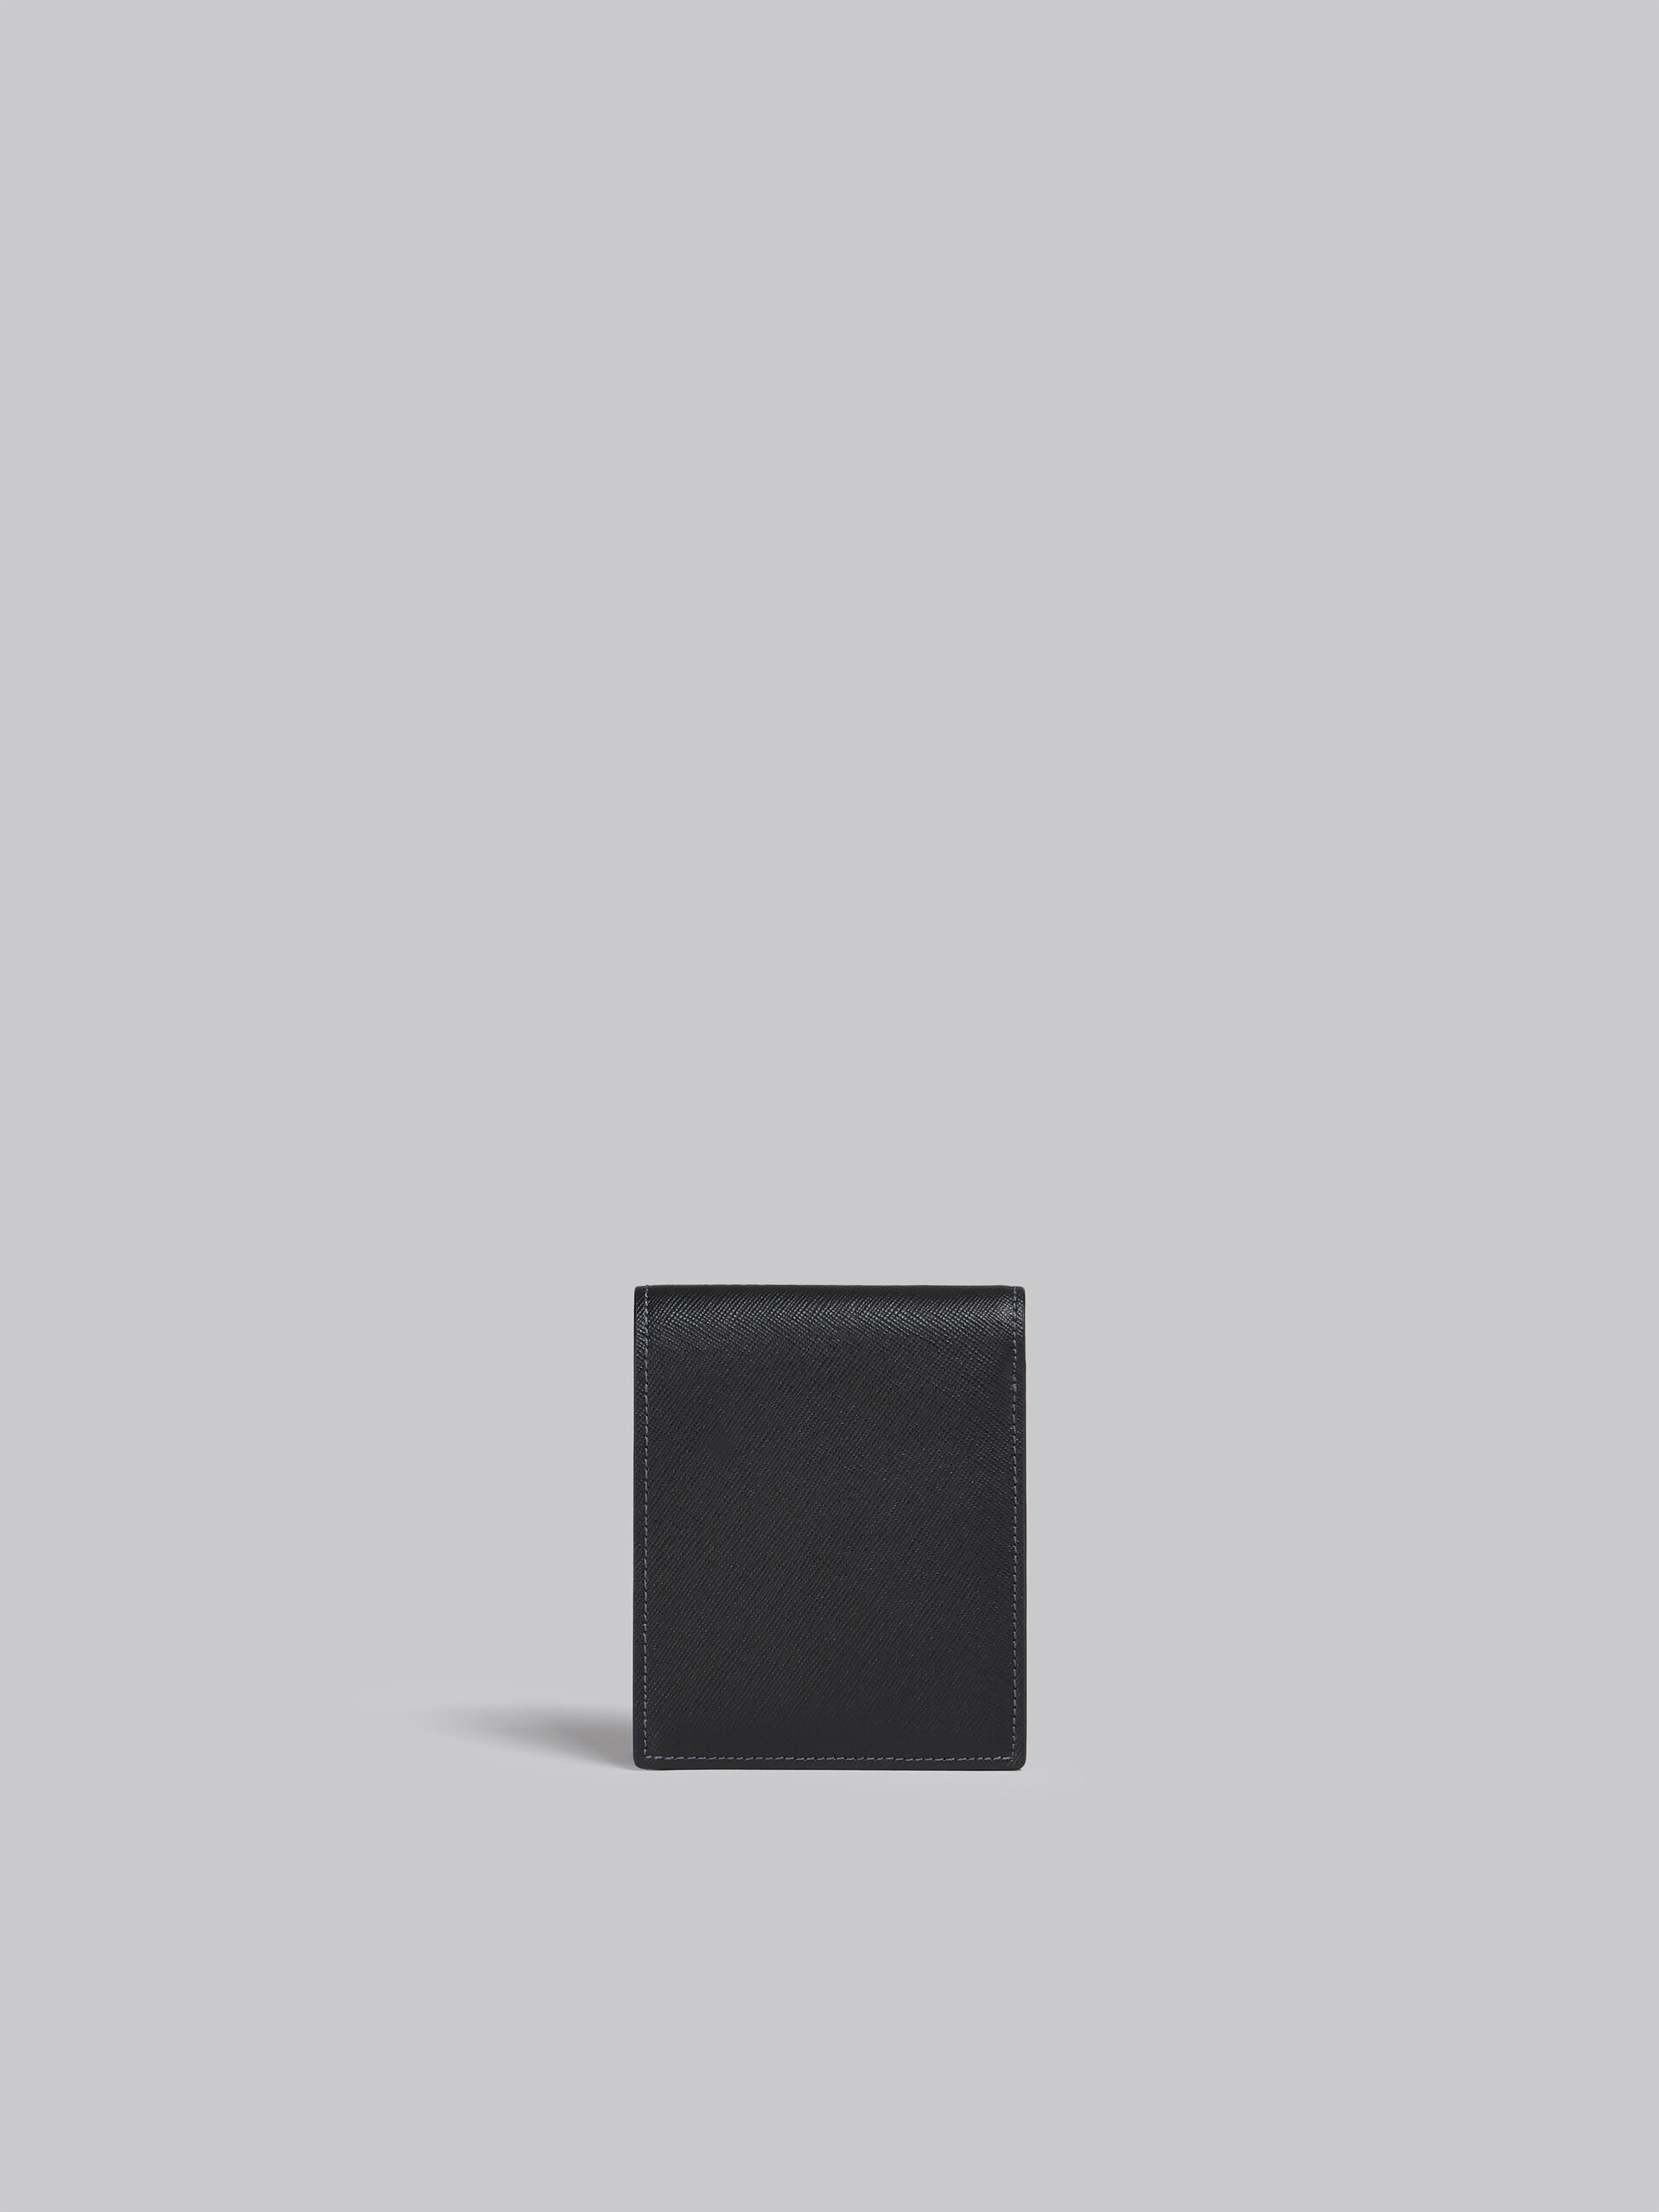 Portafoglio bi-fold in saffiano nero e blu - Portafogli - Image 3